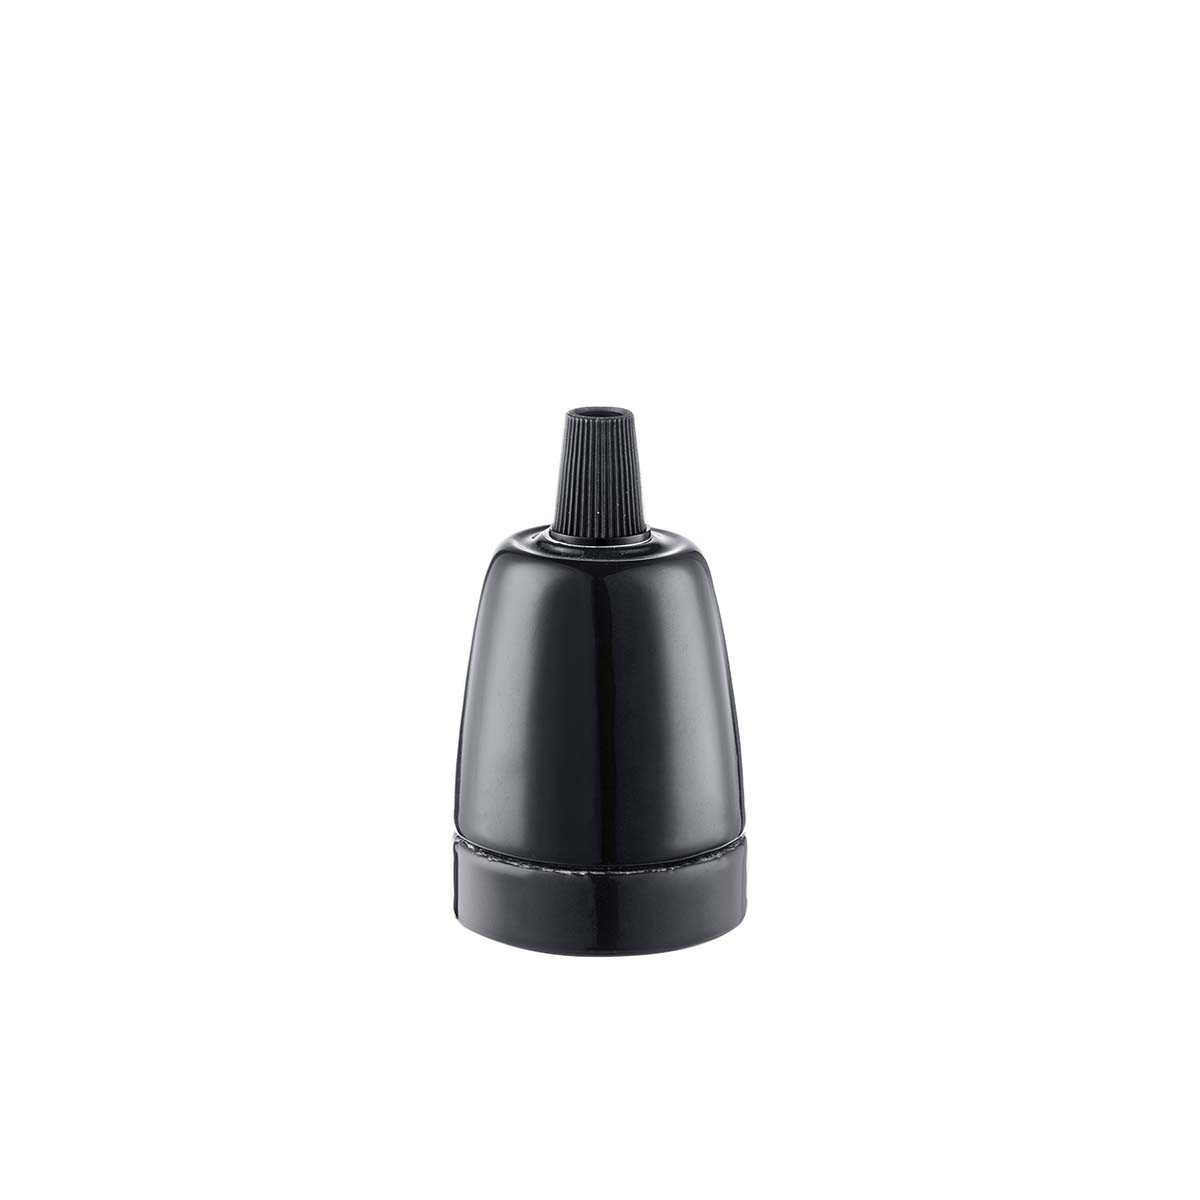 Tangla lighting - TLLH025BK - lamp holder porcelain - E27 - pot - black